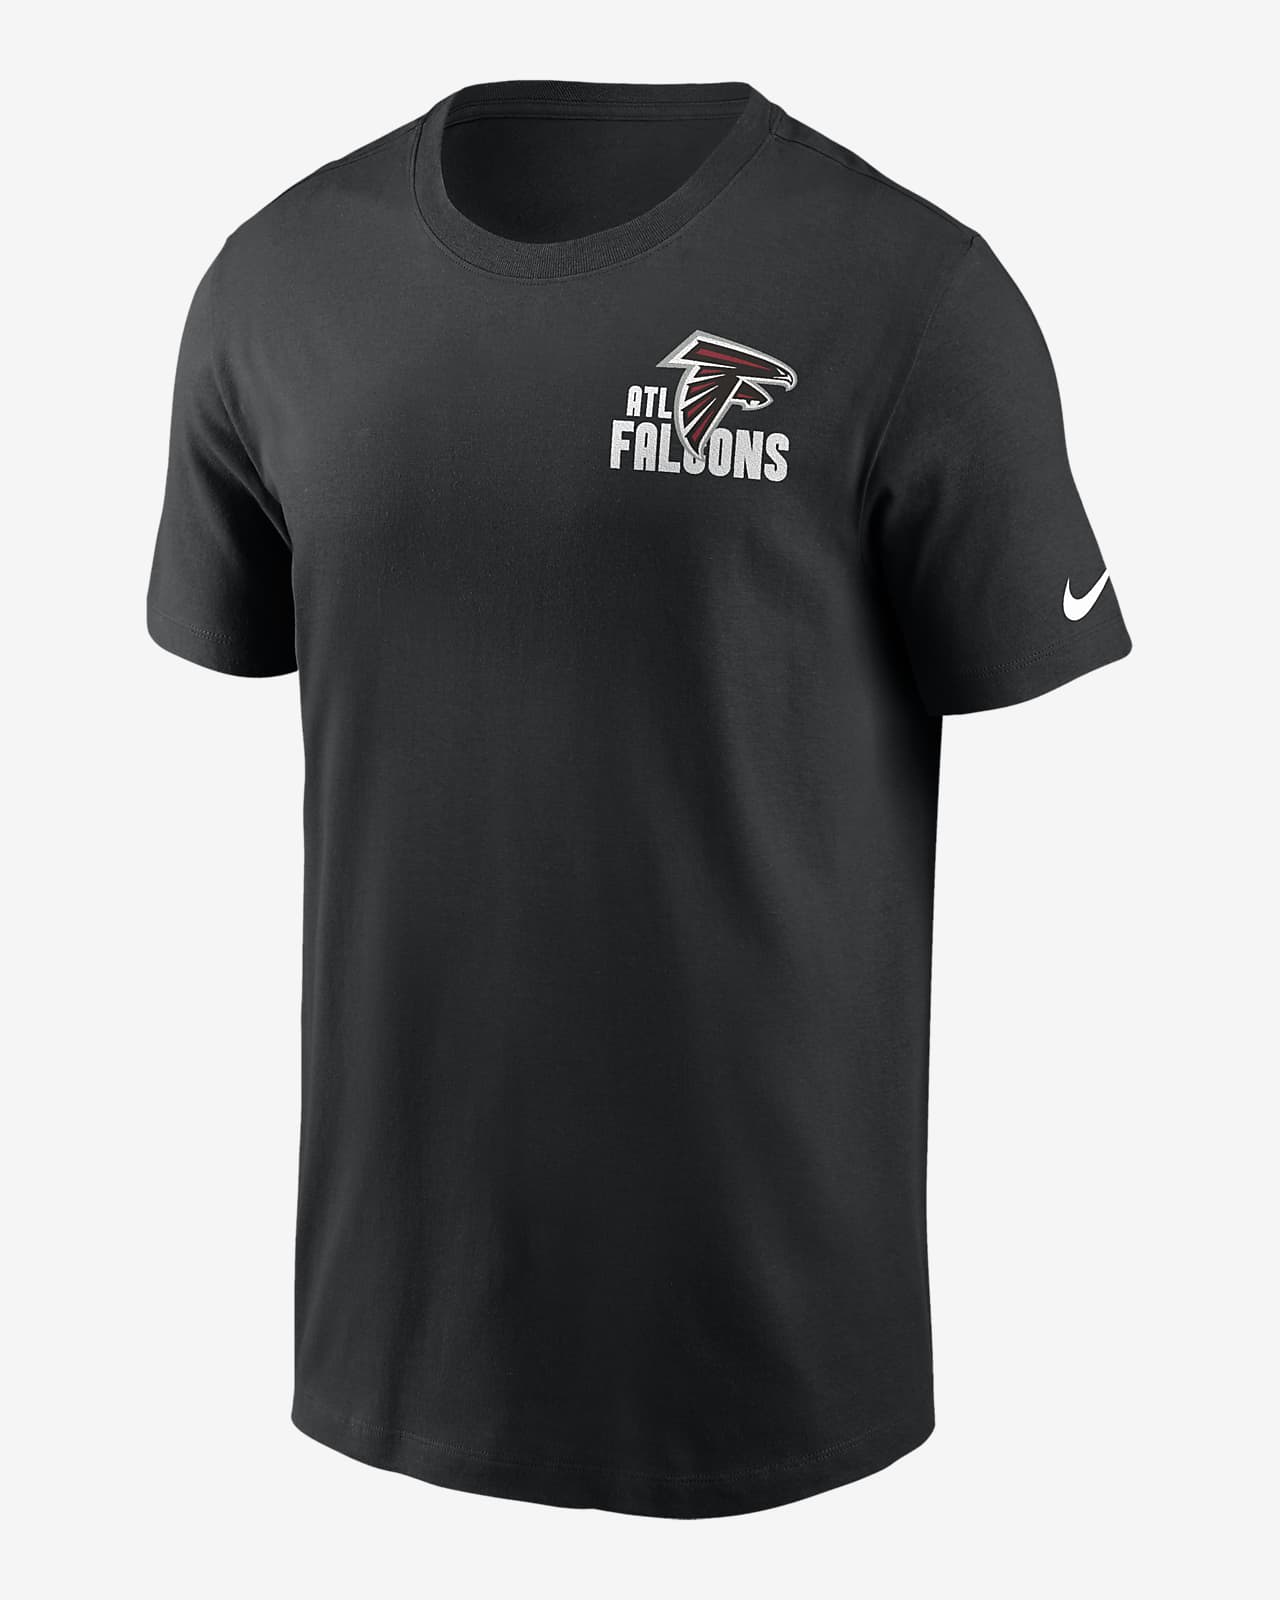 Playera Nike de la NFL para hombre Atlanta Falcons Blitz Team Essential